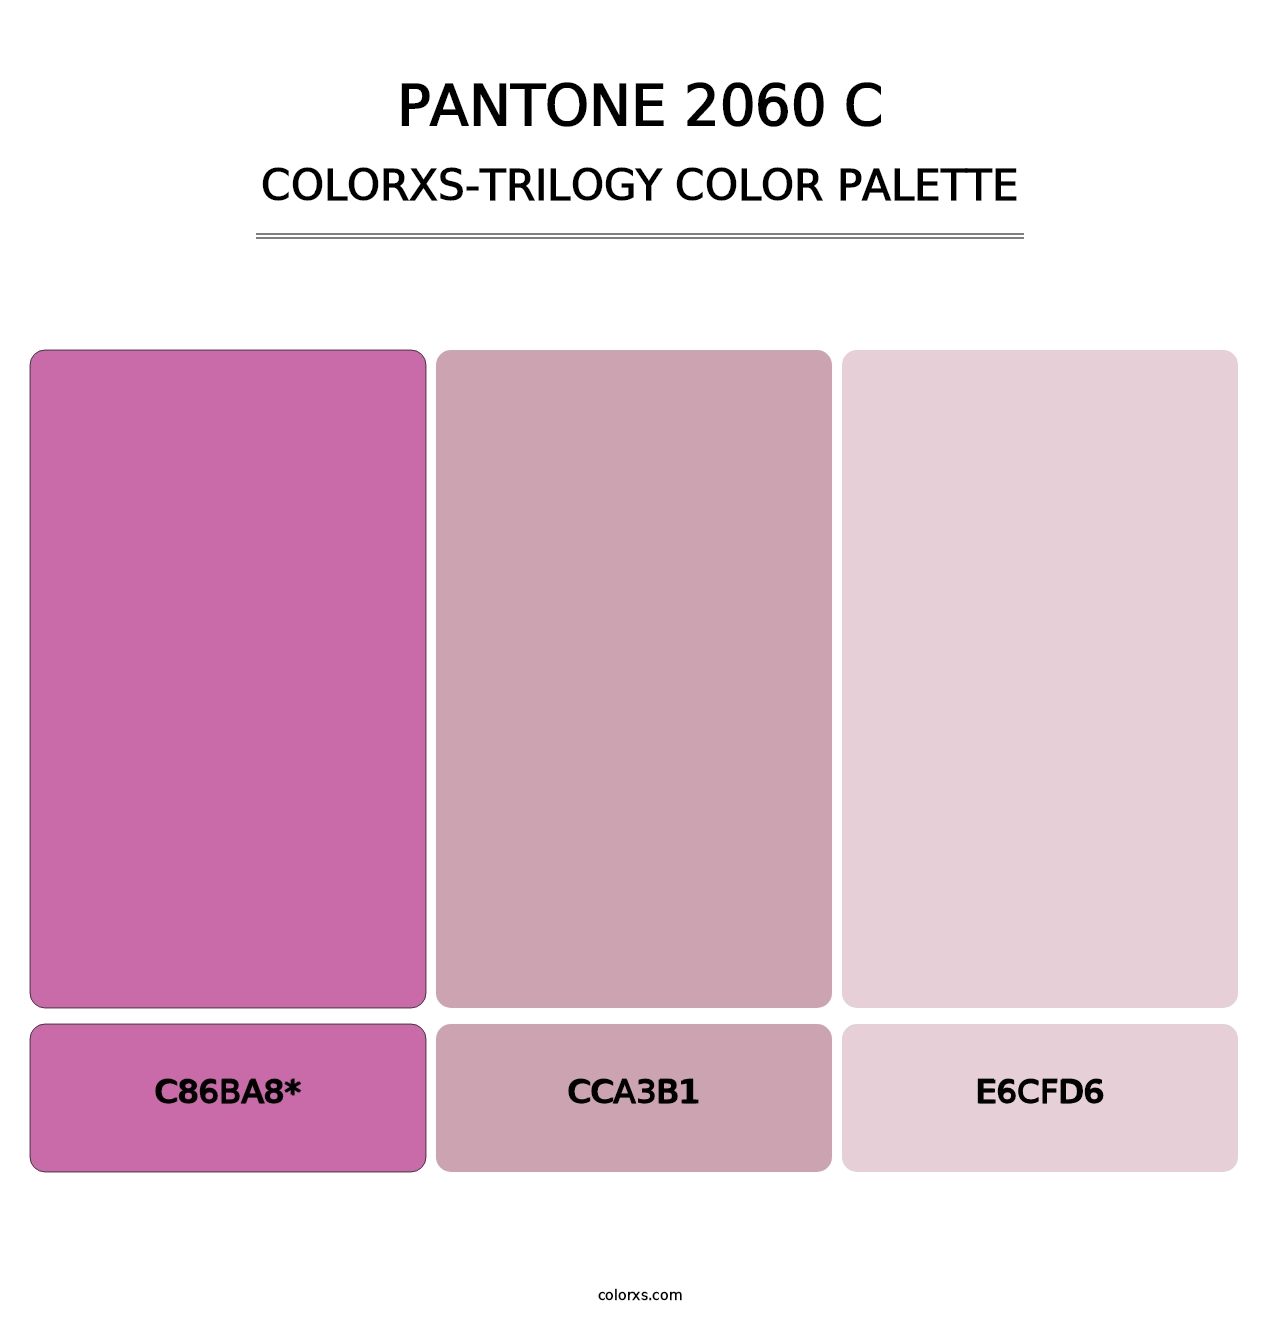 PANTONE 2060 C - Colorxs Trilogy Palette